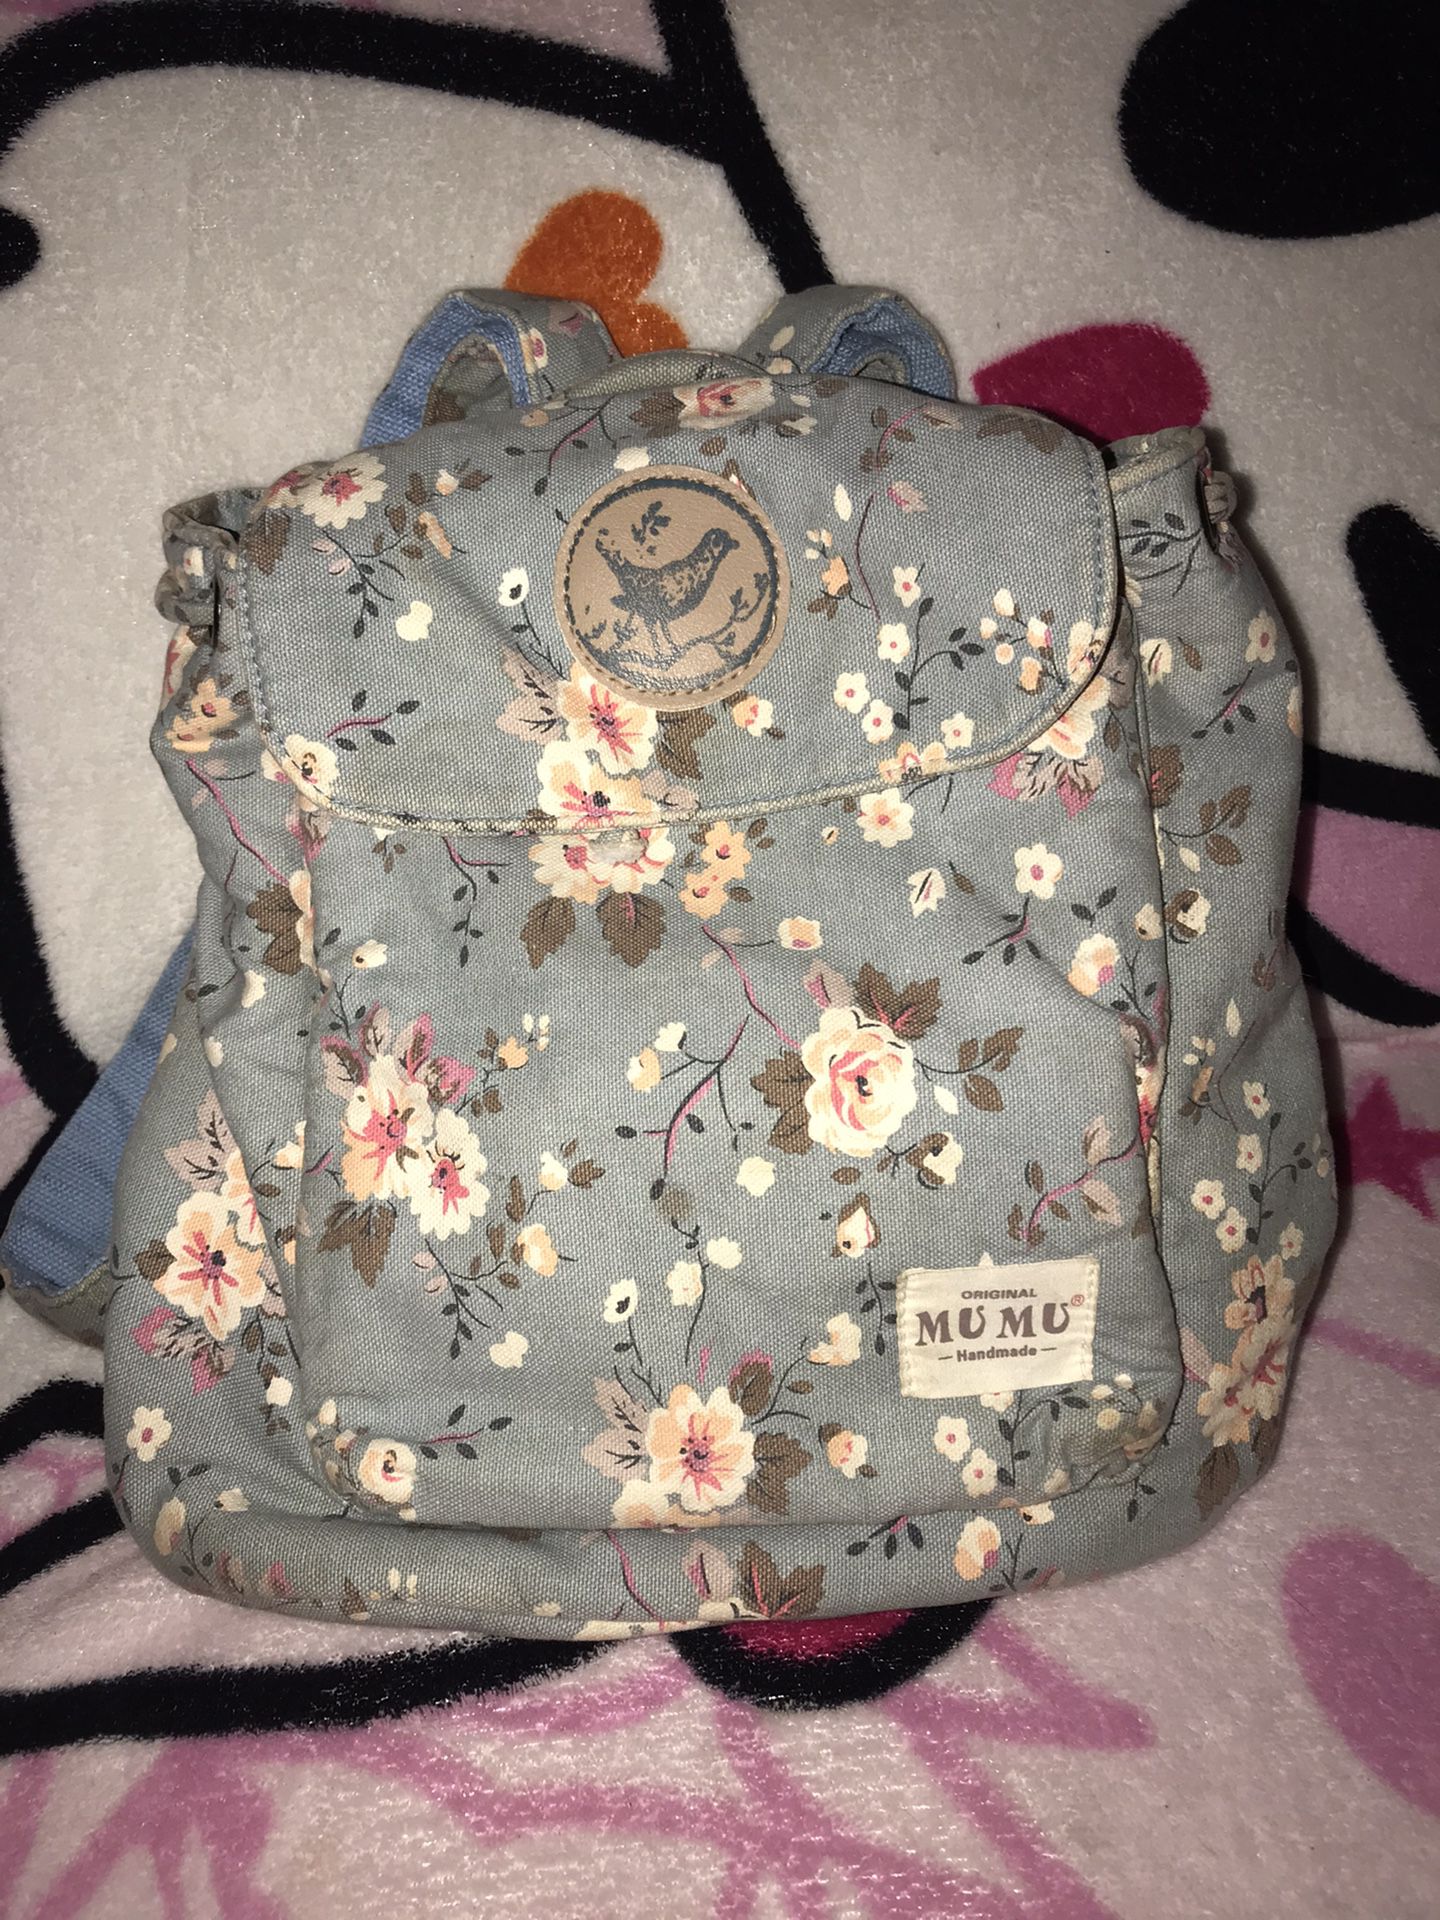 diaper bag backpack